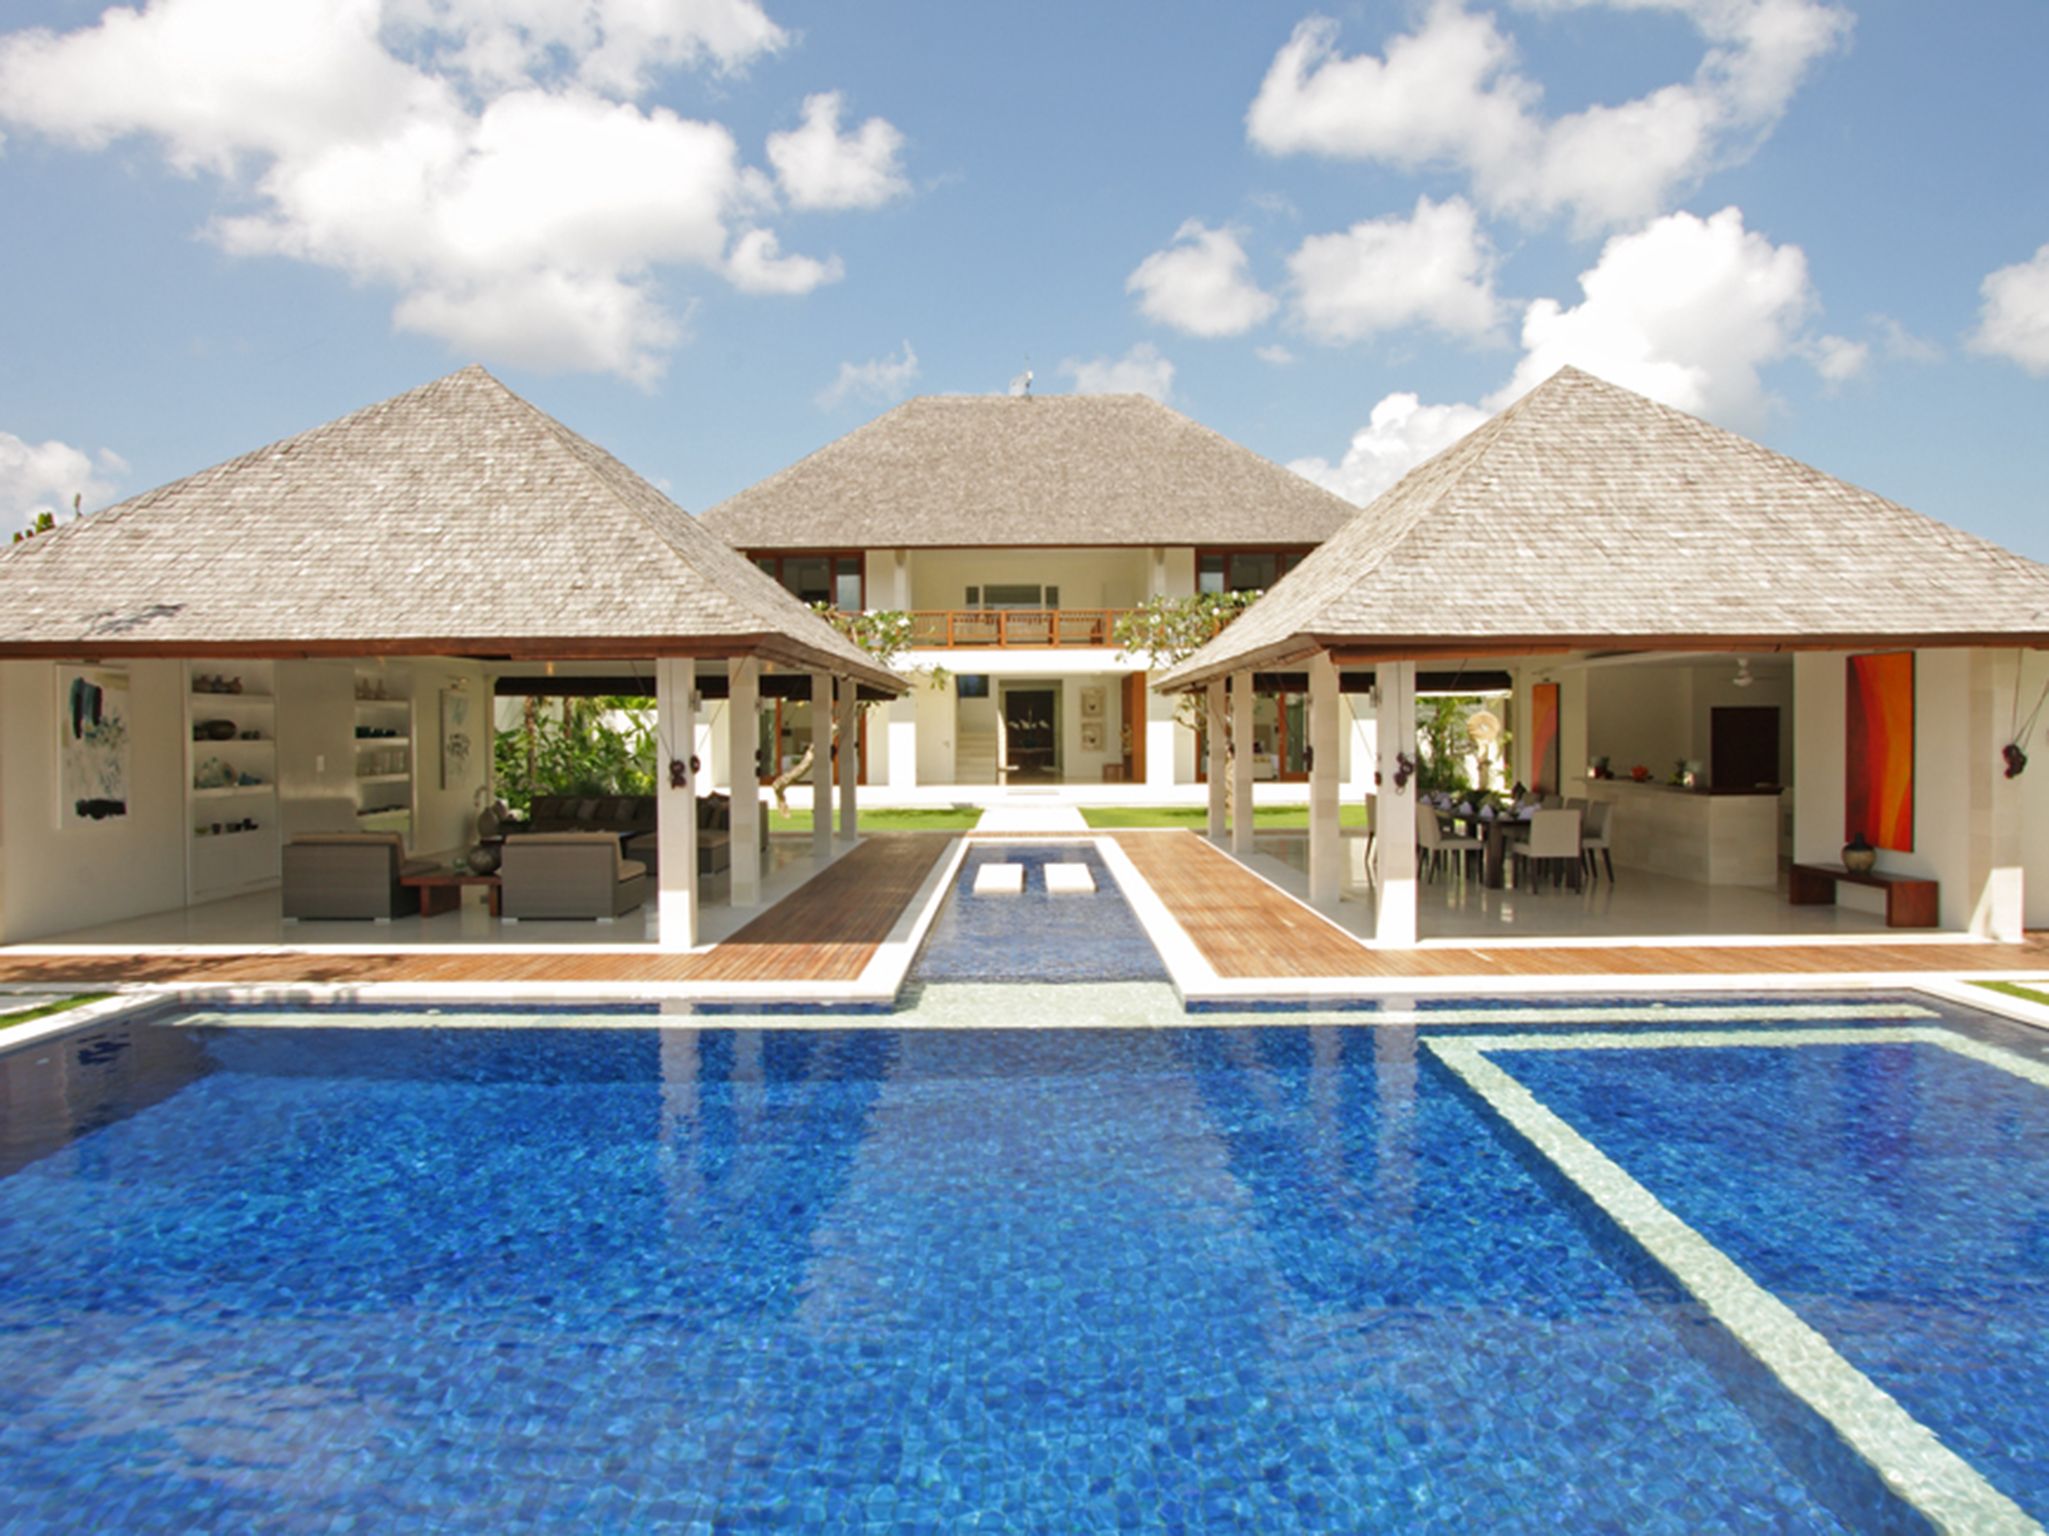 Villa Asante - The villa and pool